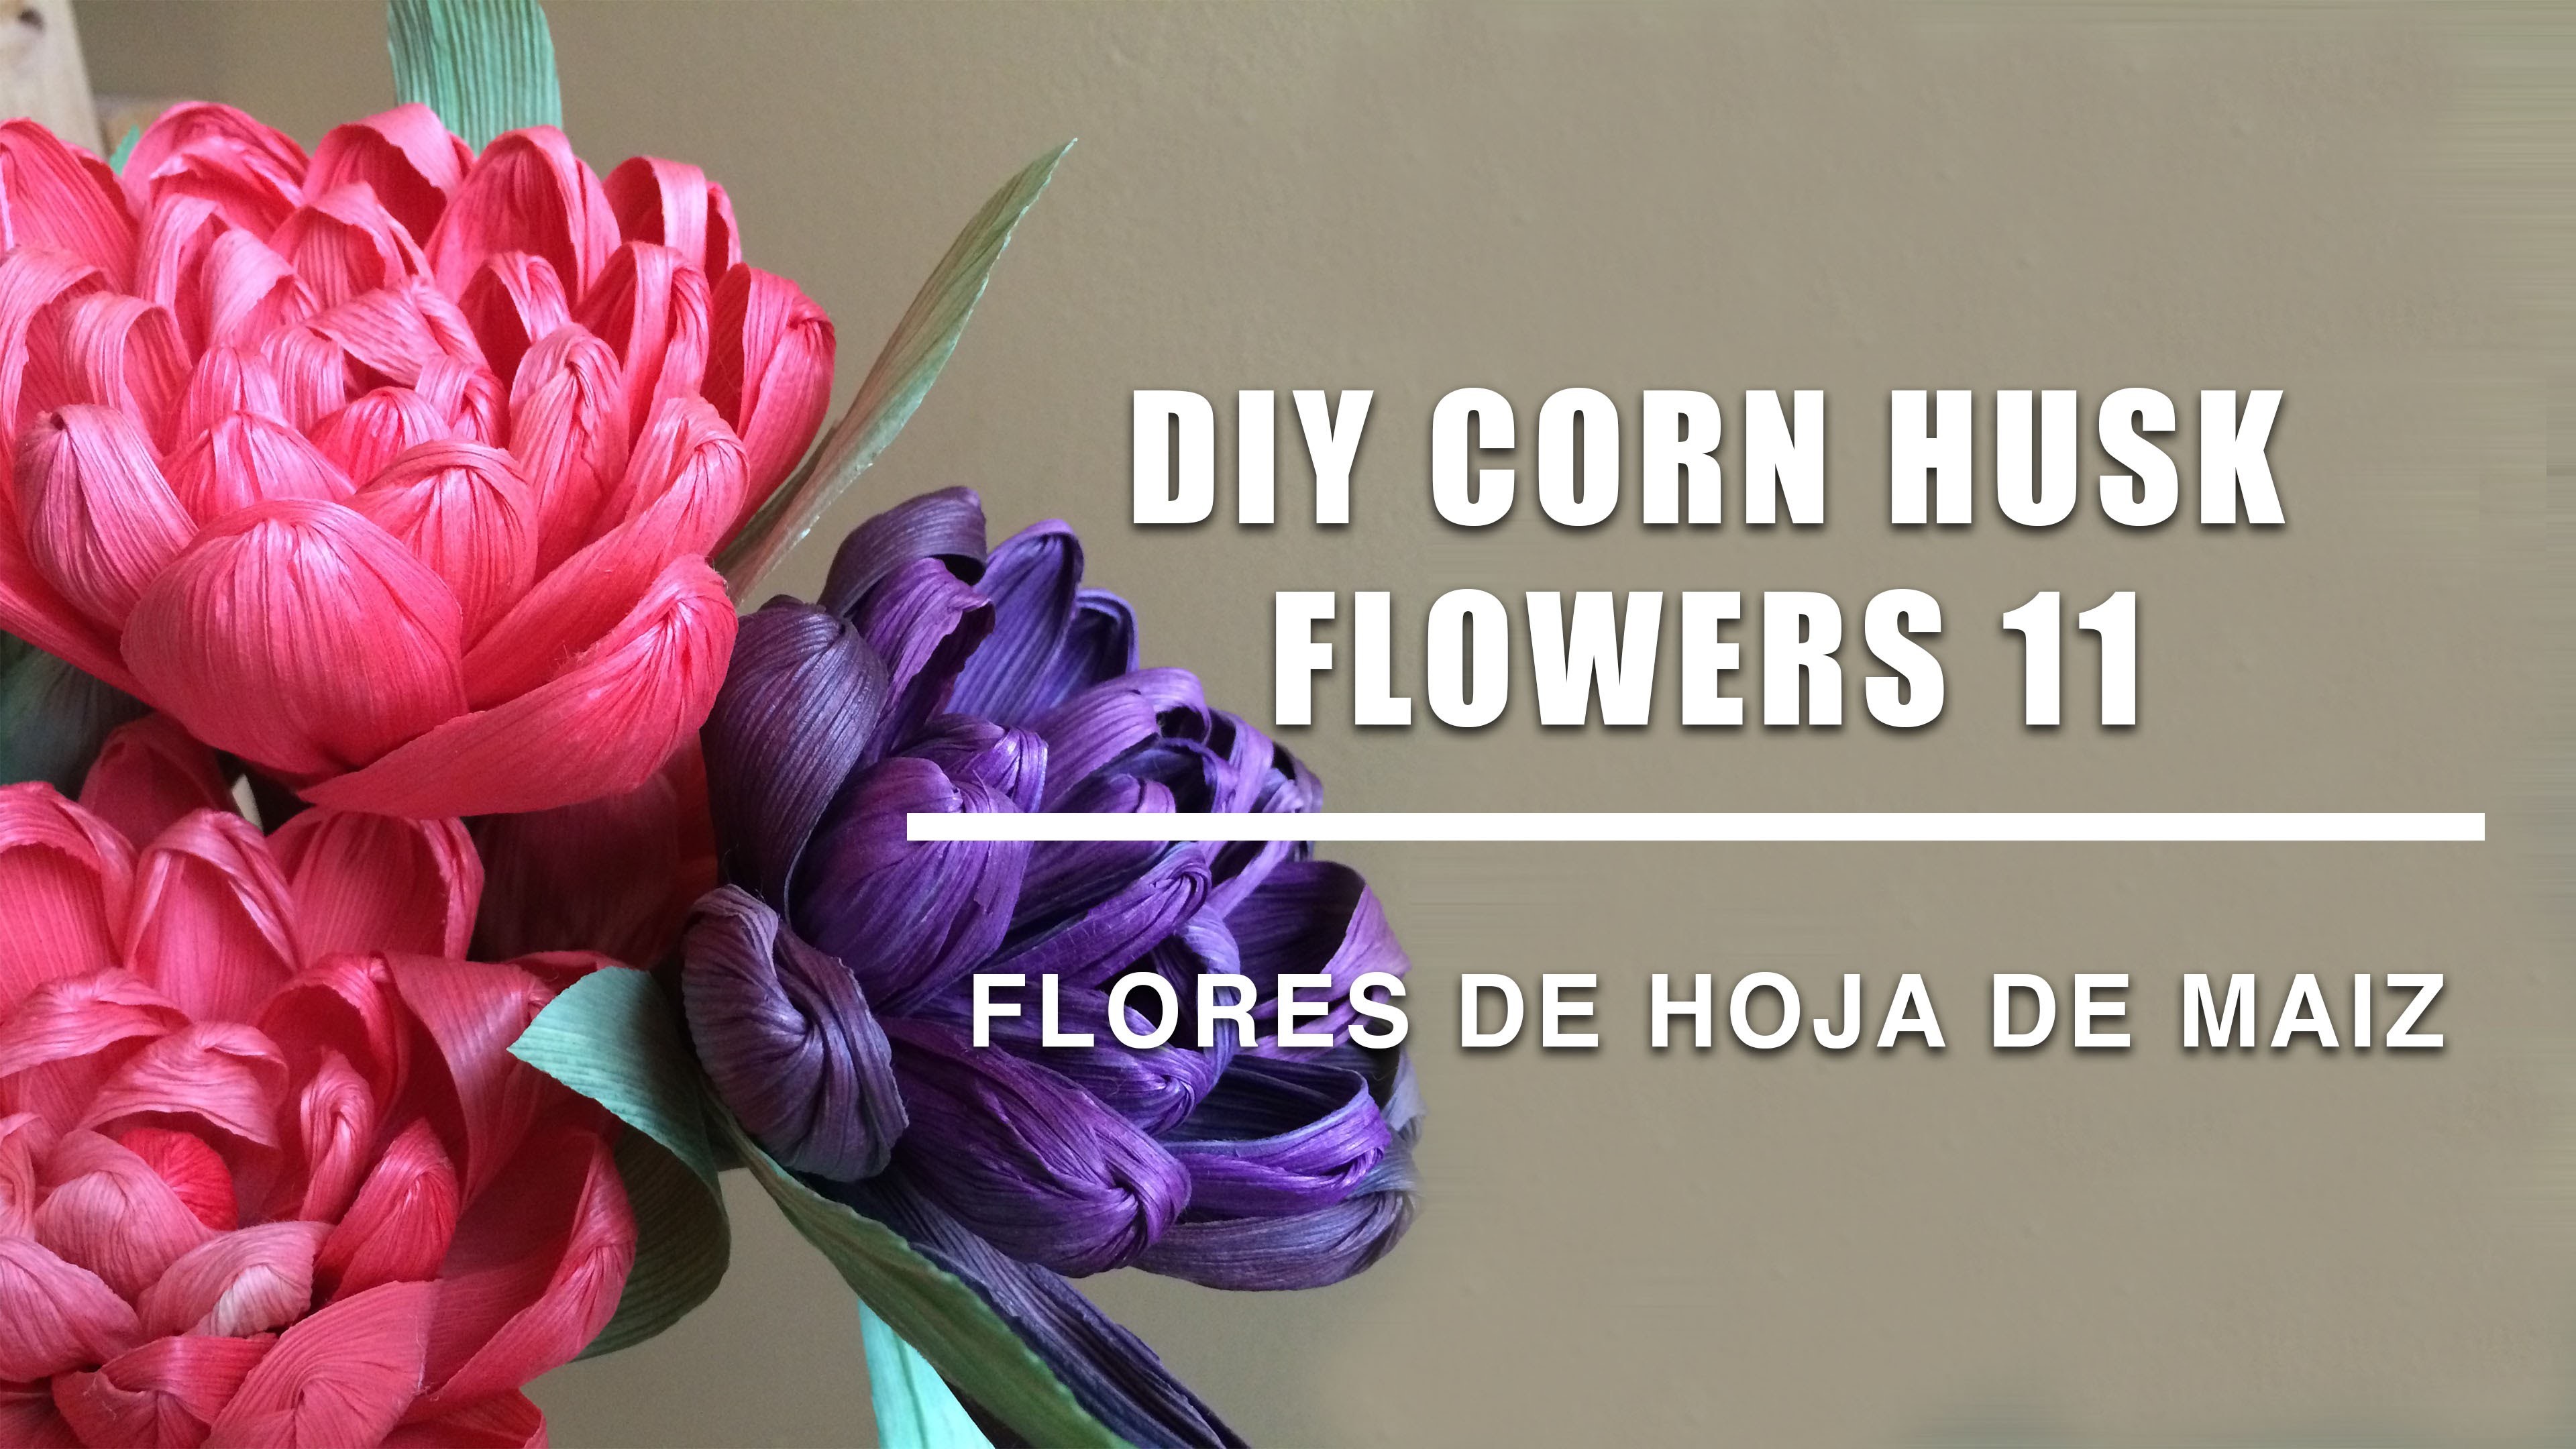 Como hacer flores de hoja de maiz 11.Corn husk dolls & flowers.hojas de totomoxtle